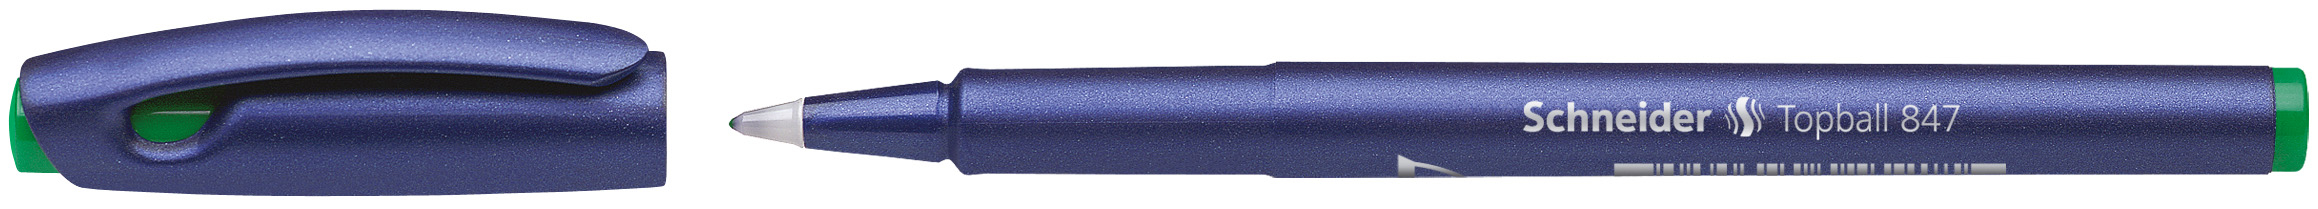 SCHNEIDER Rollerball 847 0.5mm 8474 vert